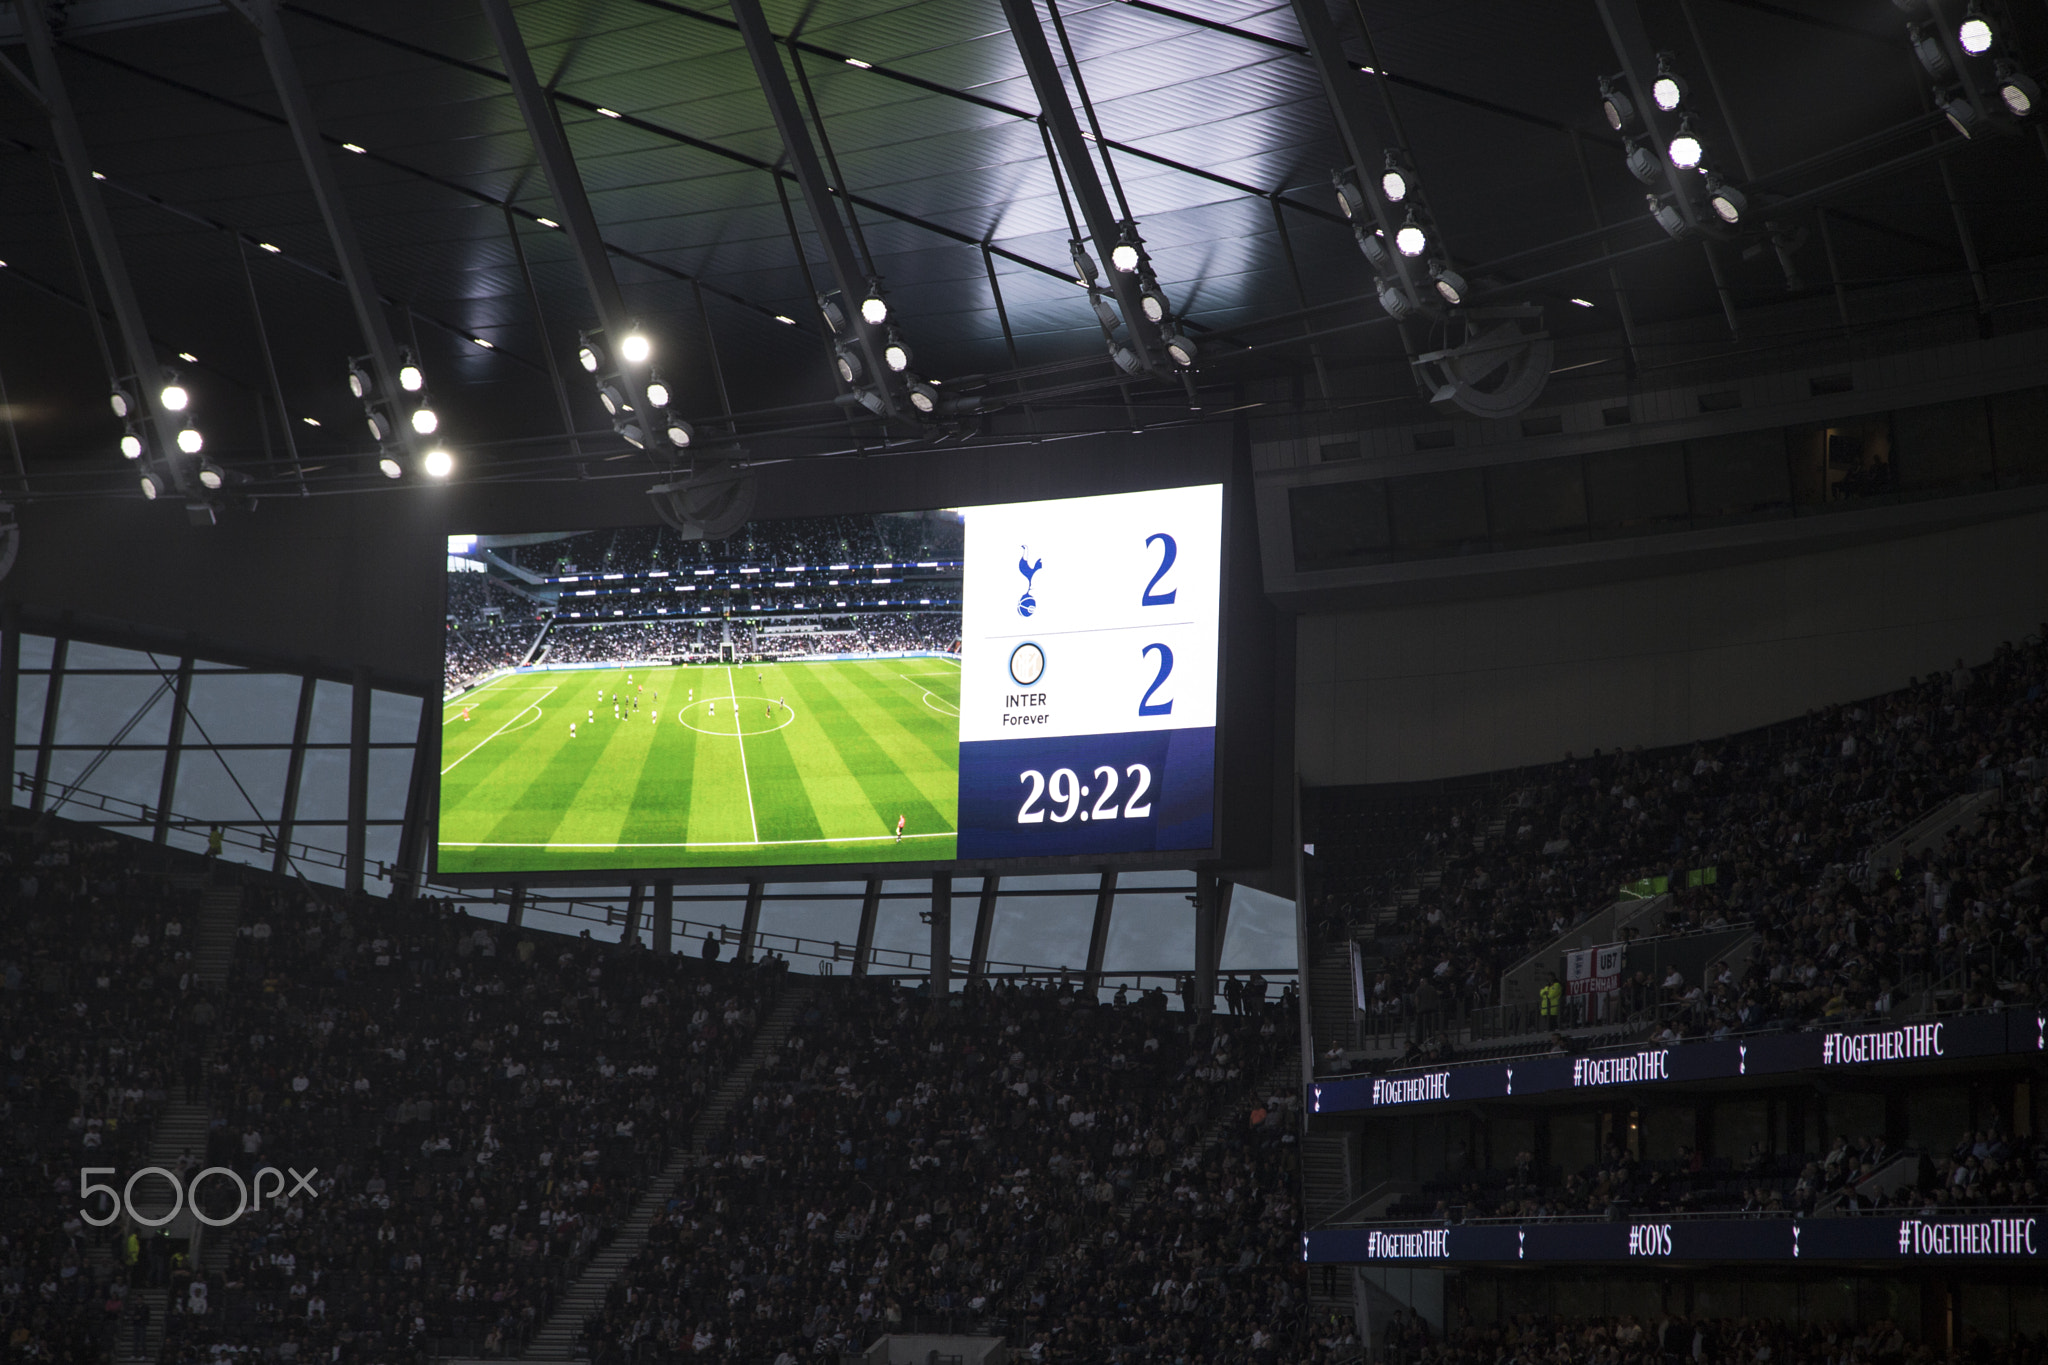 Tottenham Hotspur FC Stadium, 30th March 2019